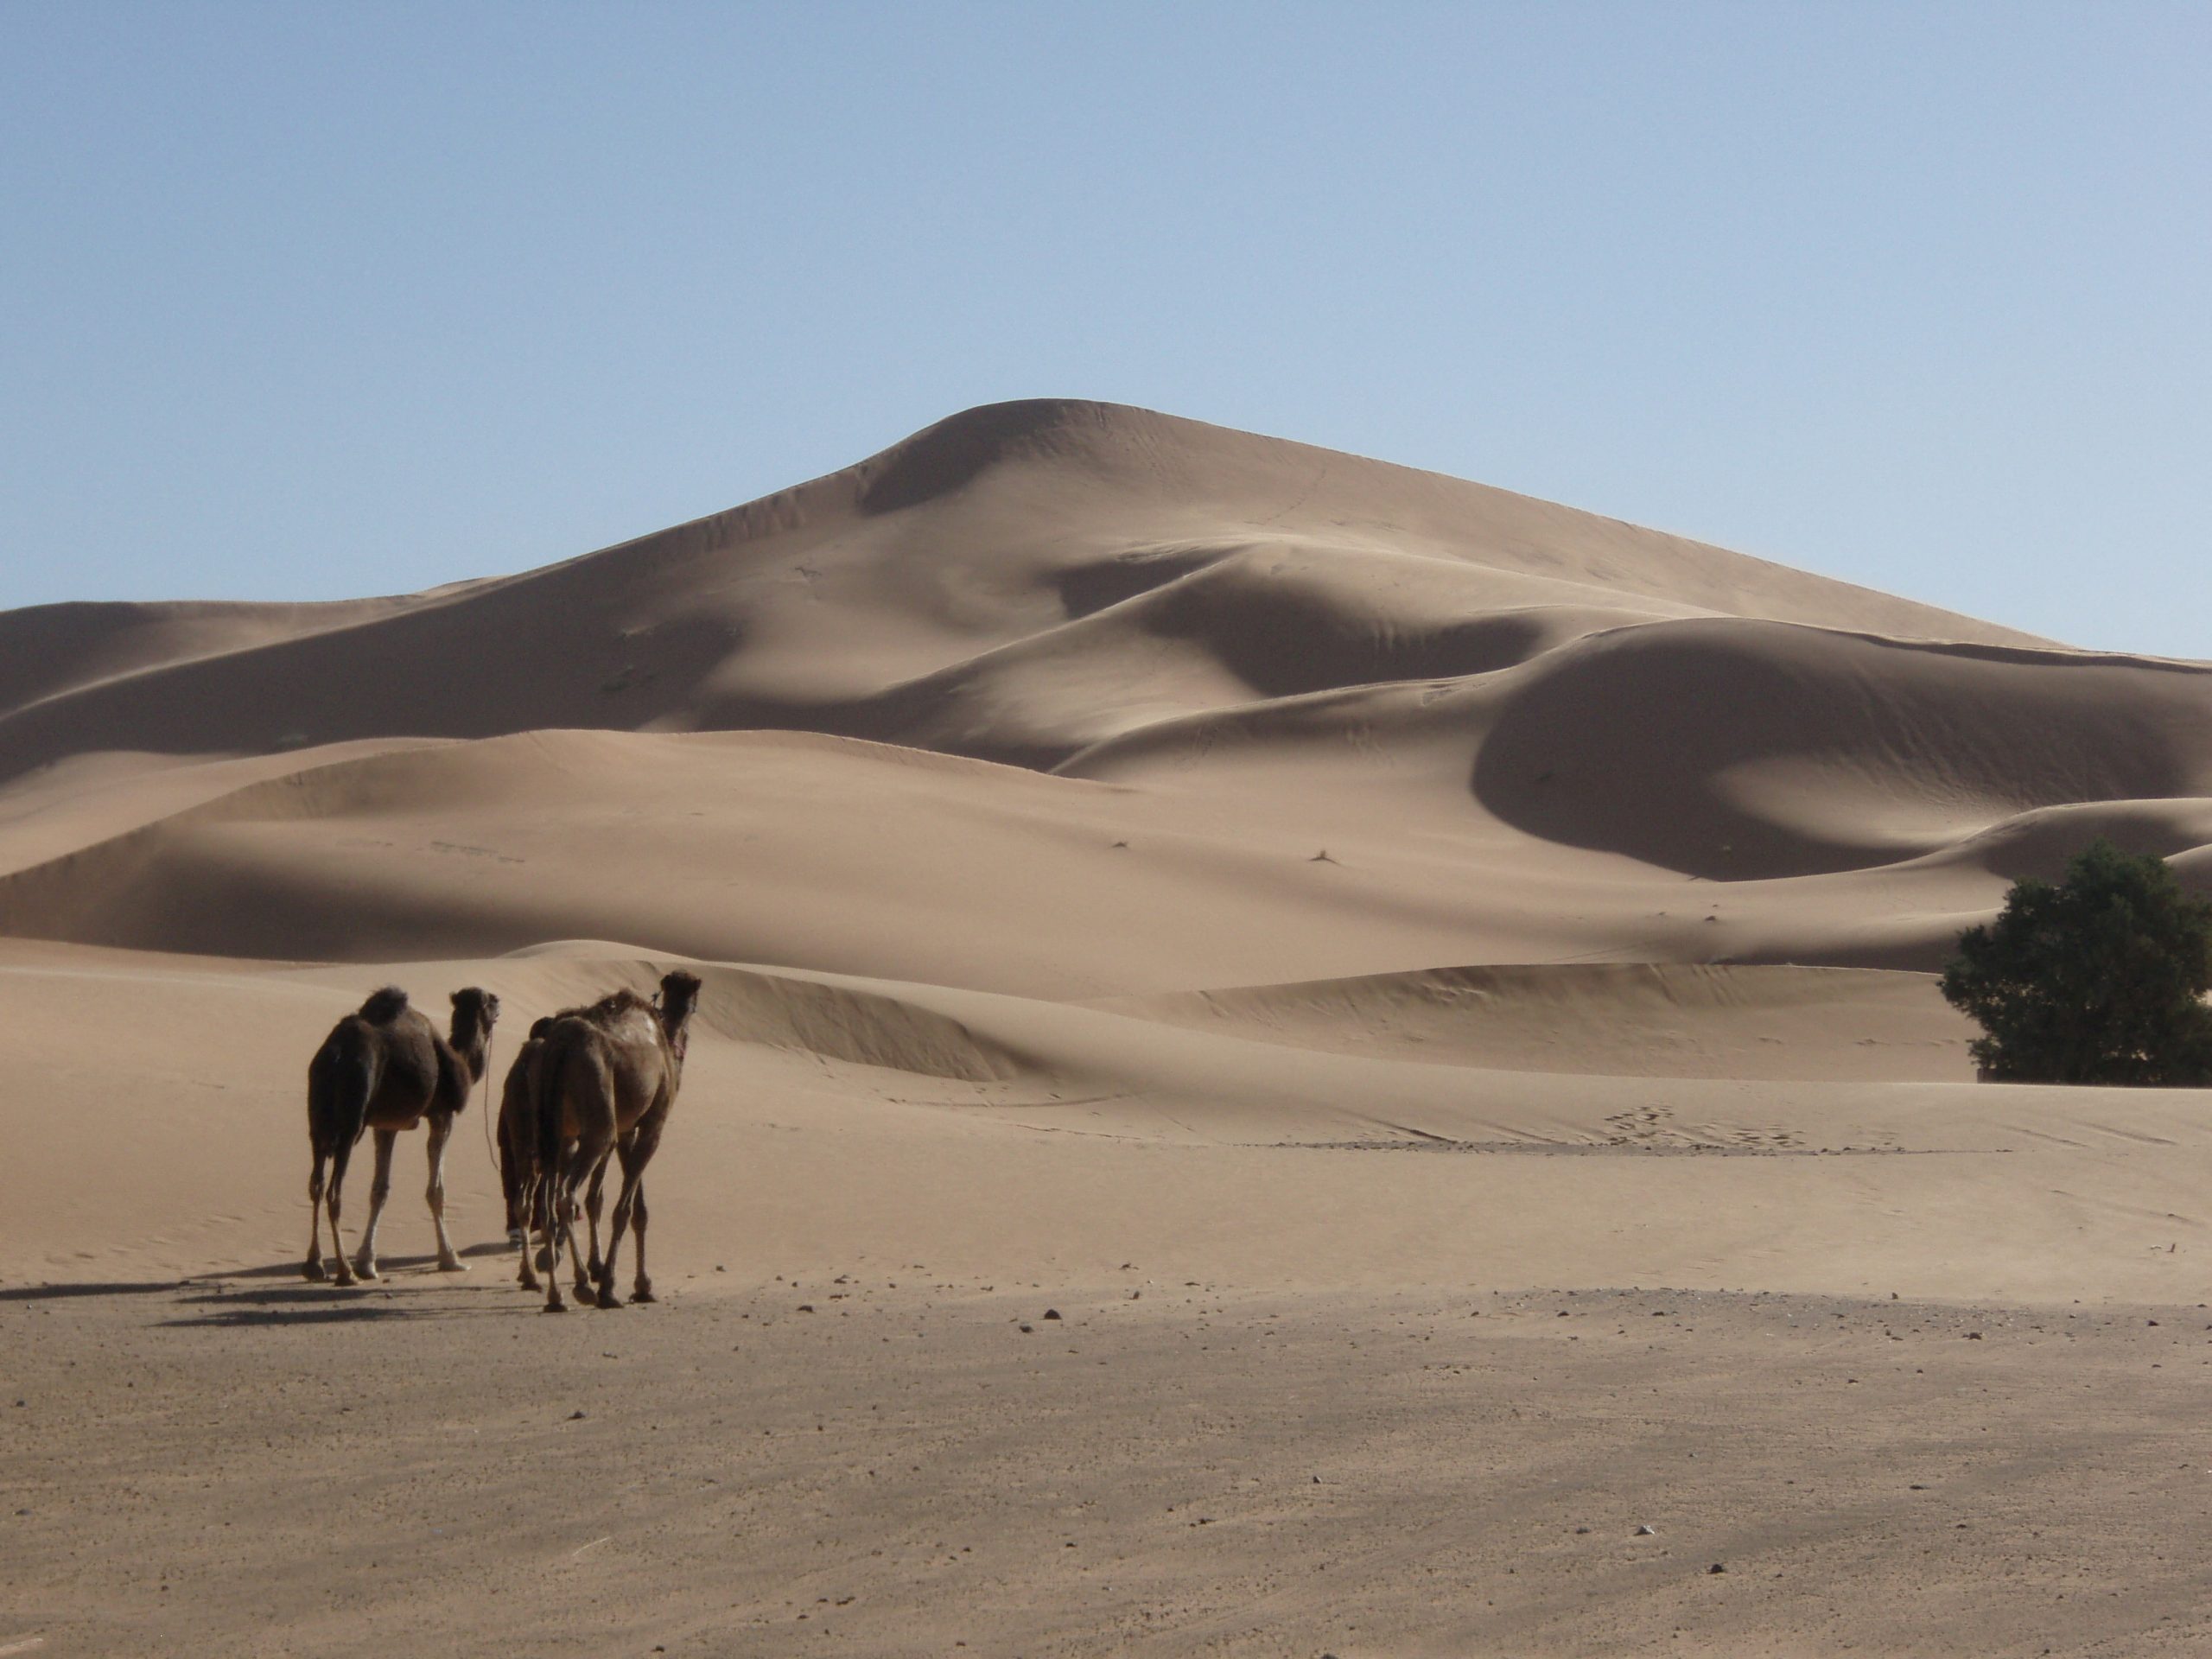 STUDIU. A fost calculată vârsta uneia dintre cele mai mari dune de nisip de pe Pământ. Ce sunt dunele stelare?